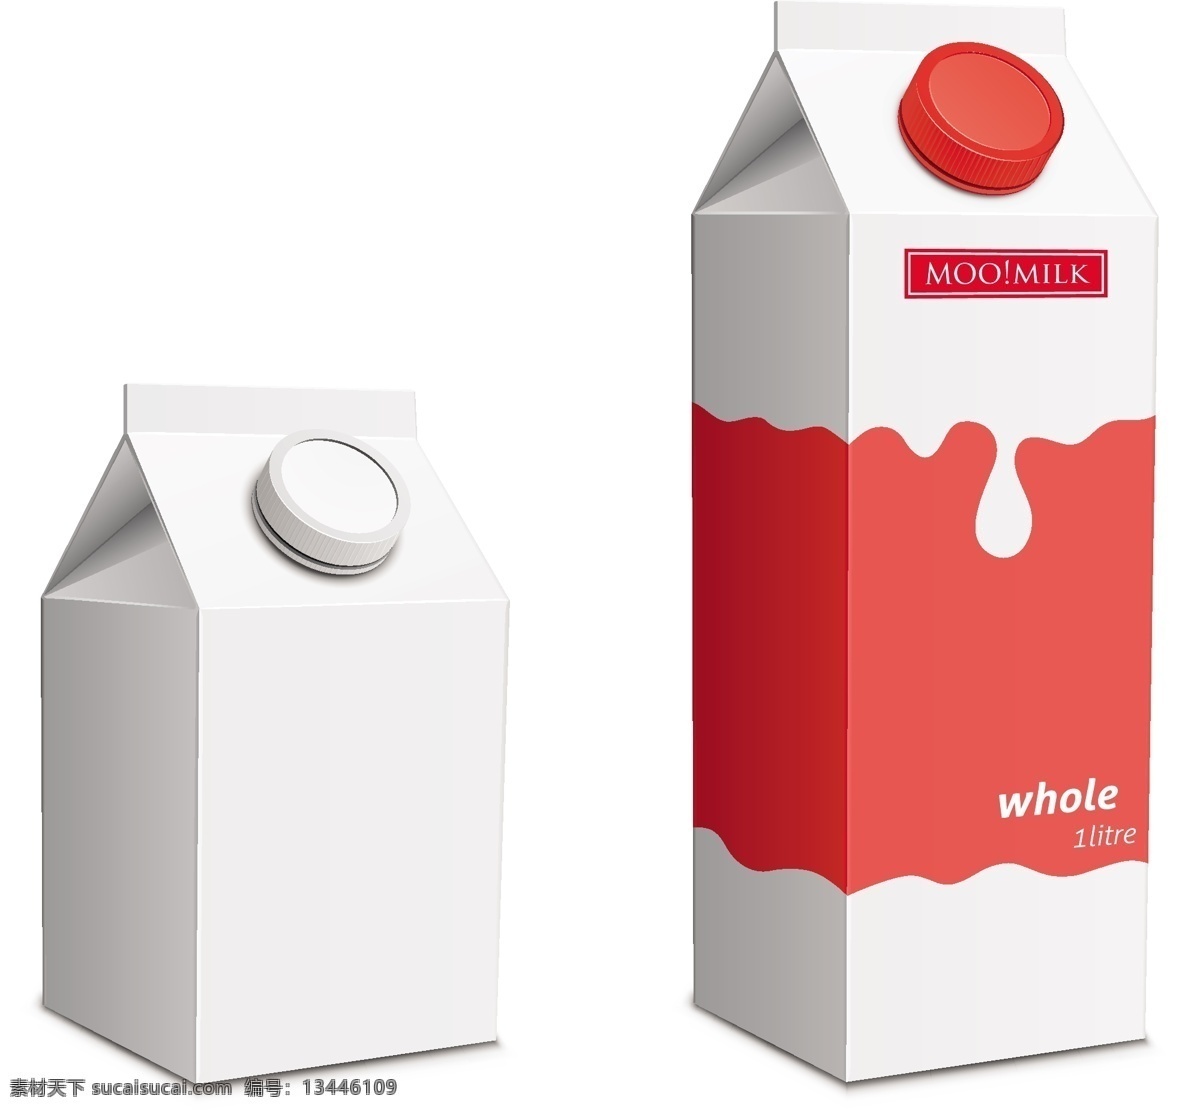 矢量 牛奶 包装盒 模板下载 奶瓶 包装设计 产品包装 包装盒设计 标志图标 矢量素材 白色